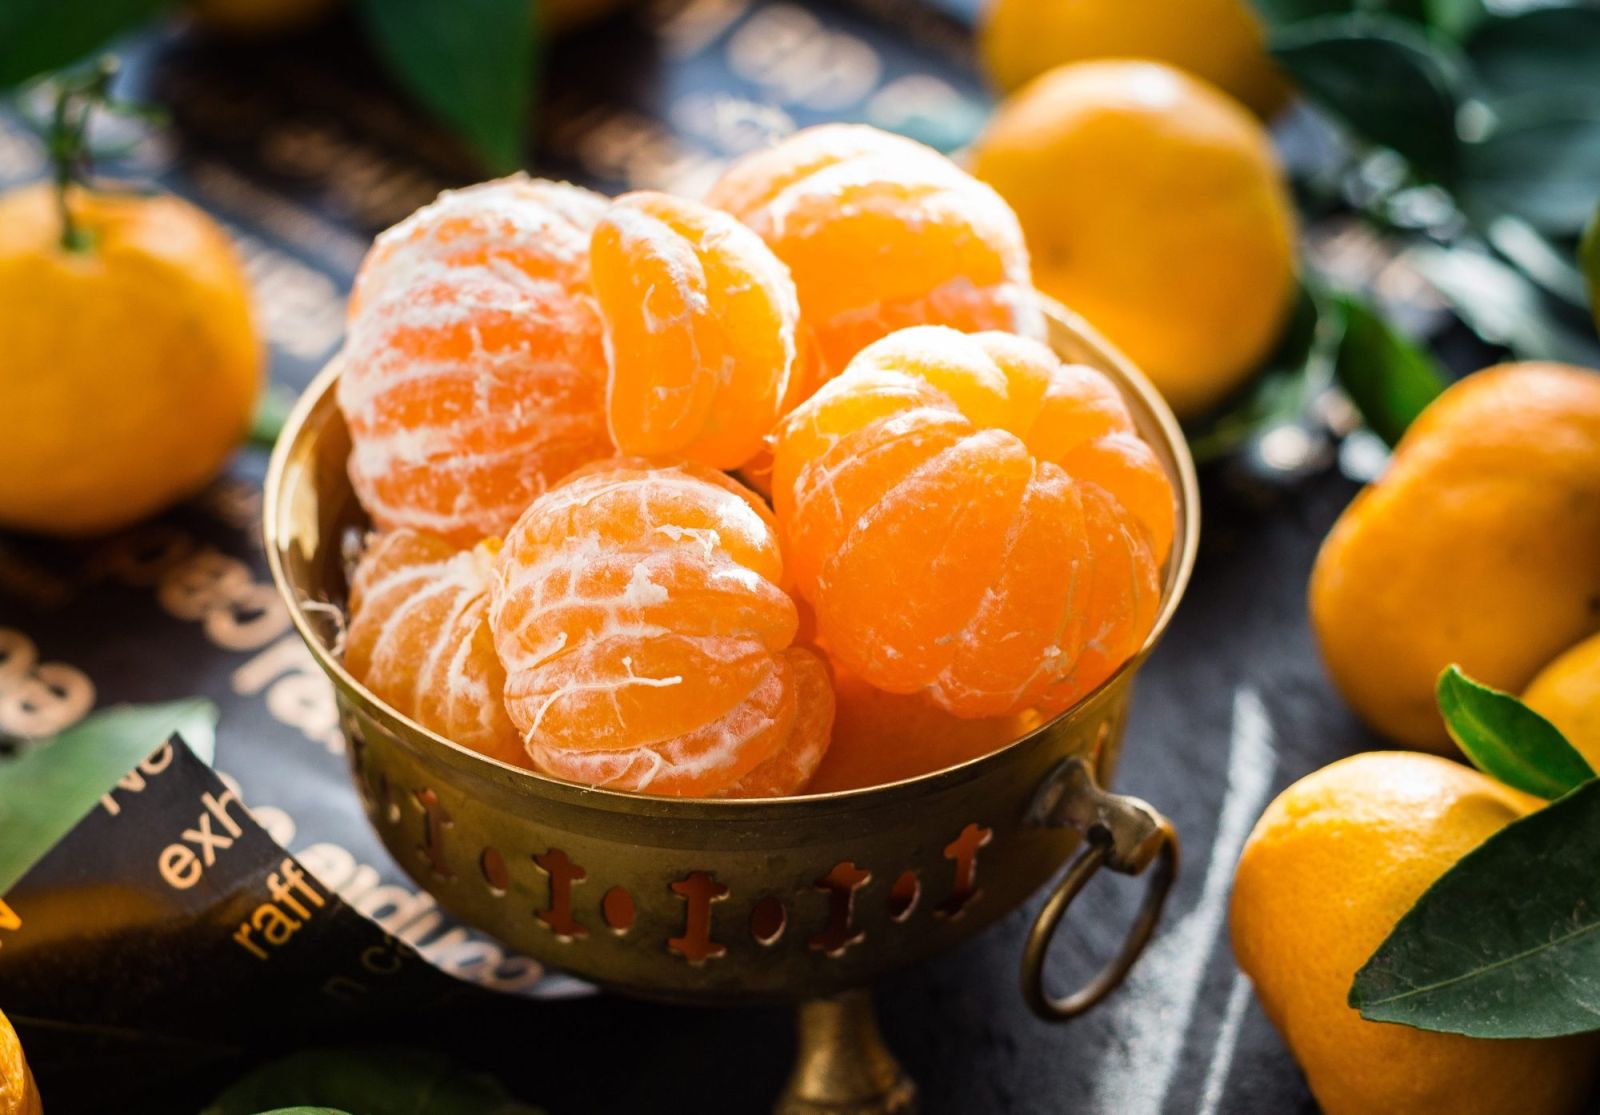 Lượng vitamin C dồi dào giúp tăng cường sức đề kháng, cải thiện khả năng miễn dịch hiệu quả